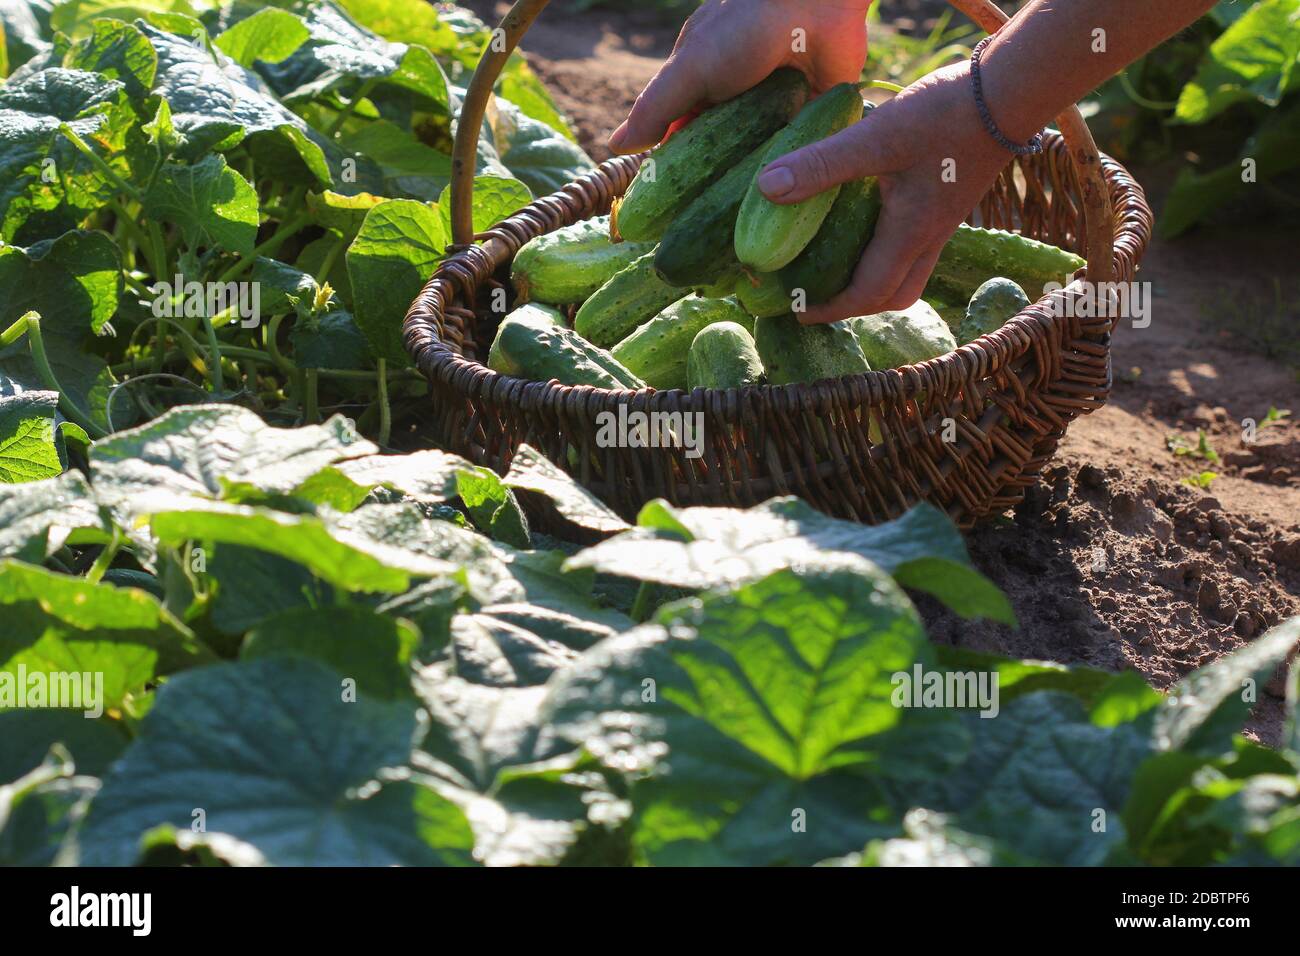 Verdure biologiche. I contadini mani con cetrioli appena raccolti nel cesto. Raccolto di prodotti da giardino. Foto Stock